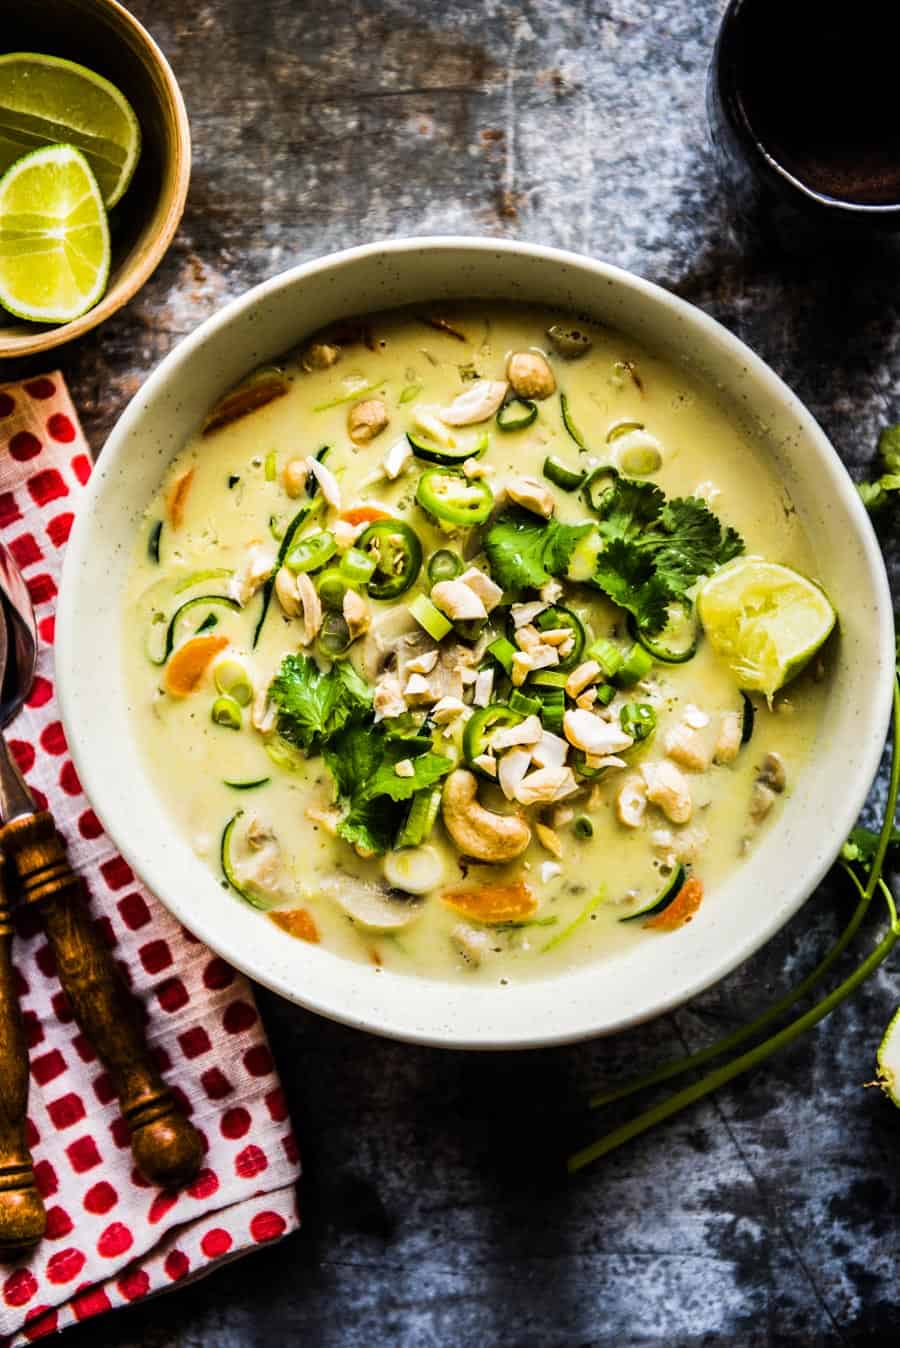 Tom Kha Gai can also be a vegan Thai coconut curry soup